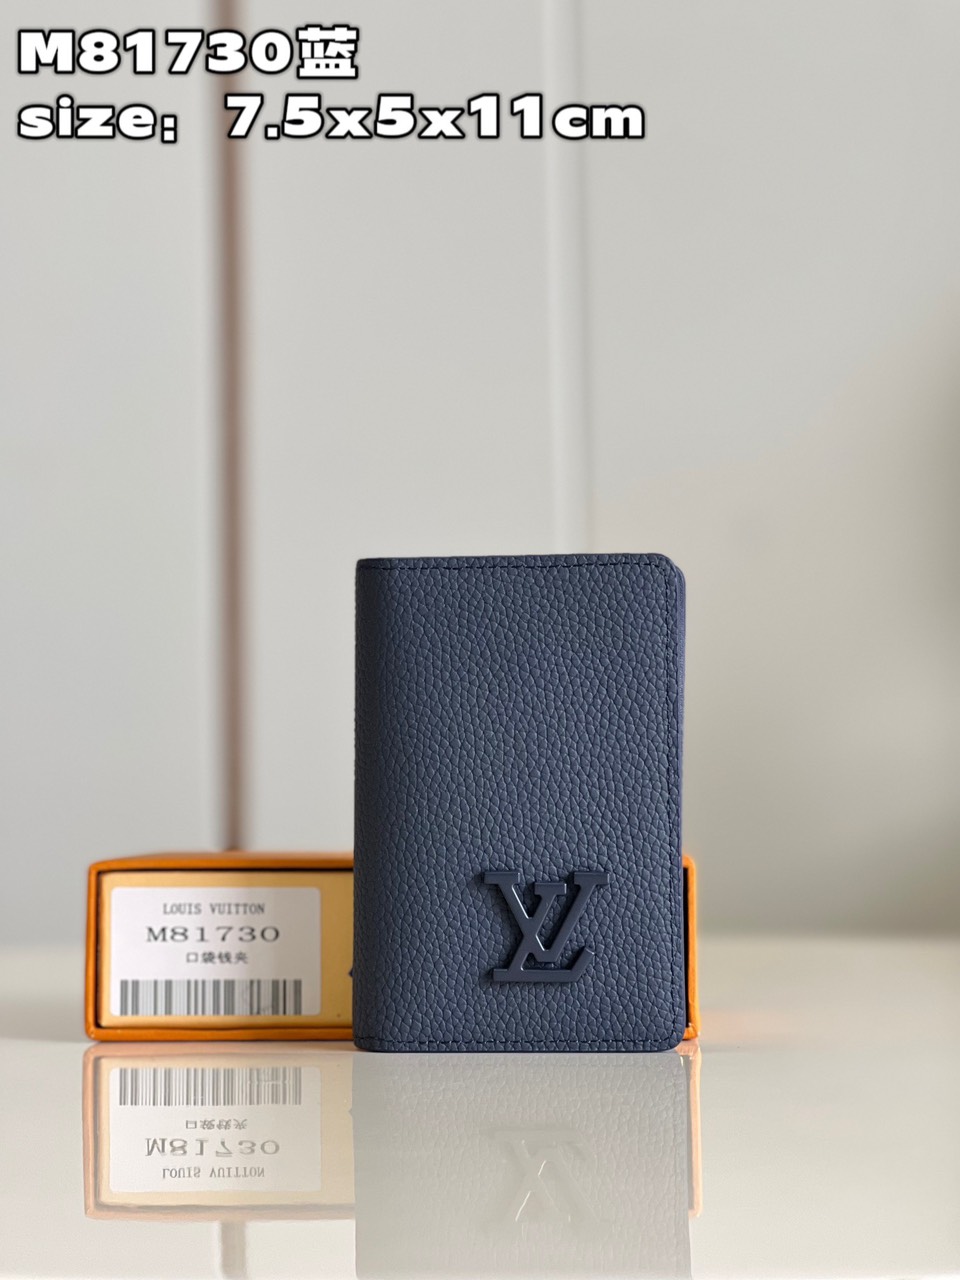 Tổng Hợp Ví Louis Vuitton Siêu Cấp Nam 01